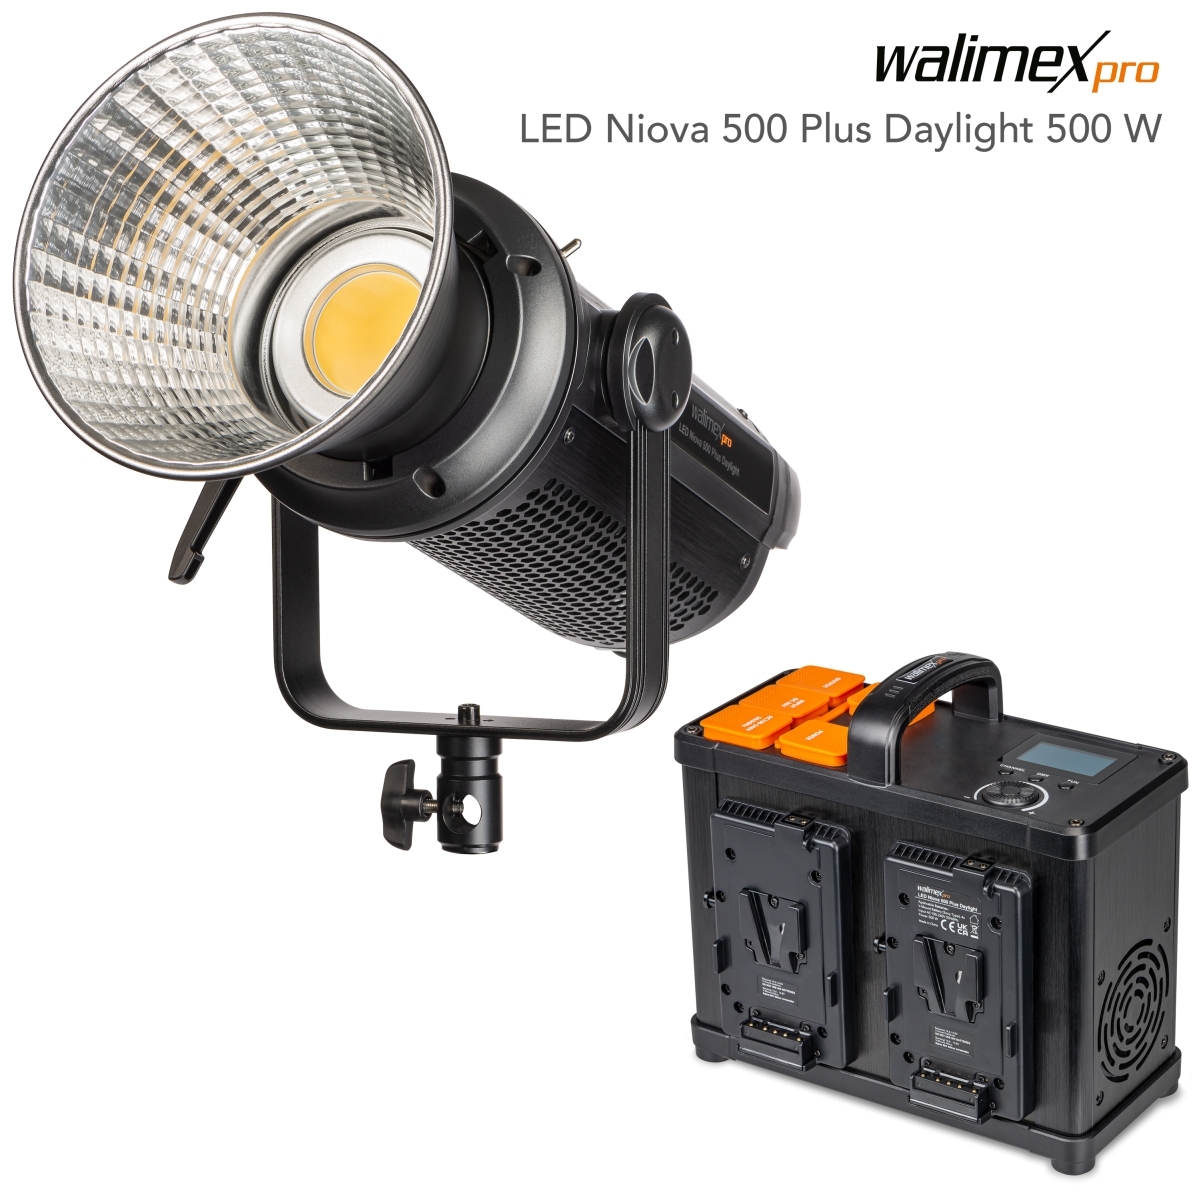 Walimex pro LED Niova 500 Plus Daylight 500W